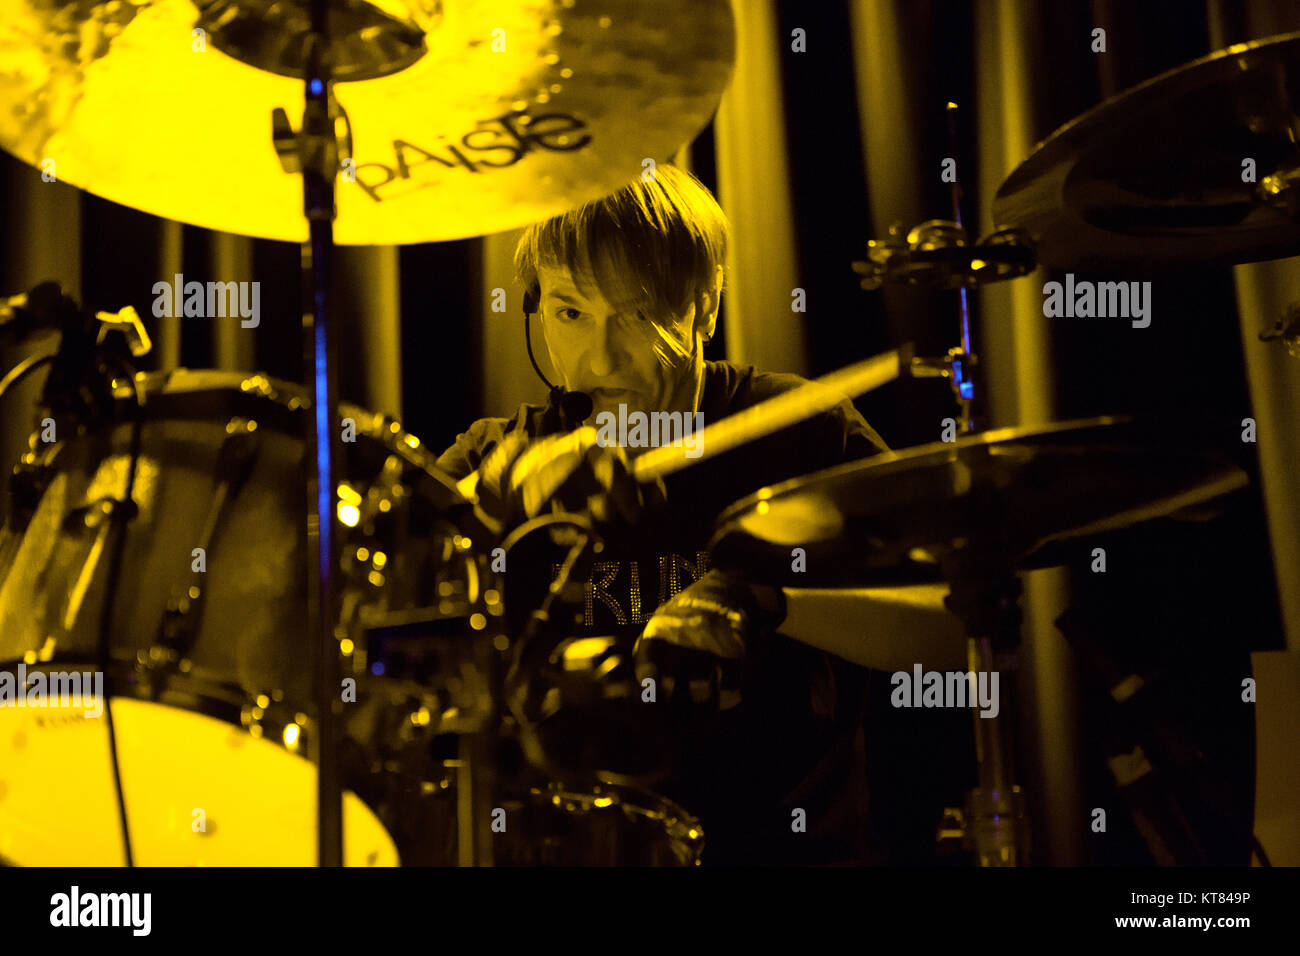 I fanghi americano metal band i Melvins esegue un concerto dal vivo al Blå in Oslo. Qui il batterista Dale Crover è visto dal vivo sul palco. Norvegia, 10/06 2016. Foto Stock